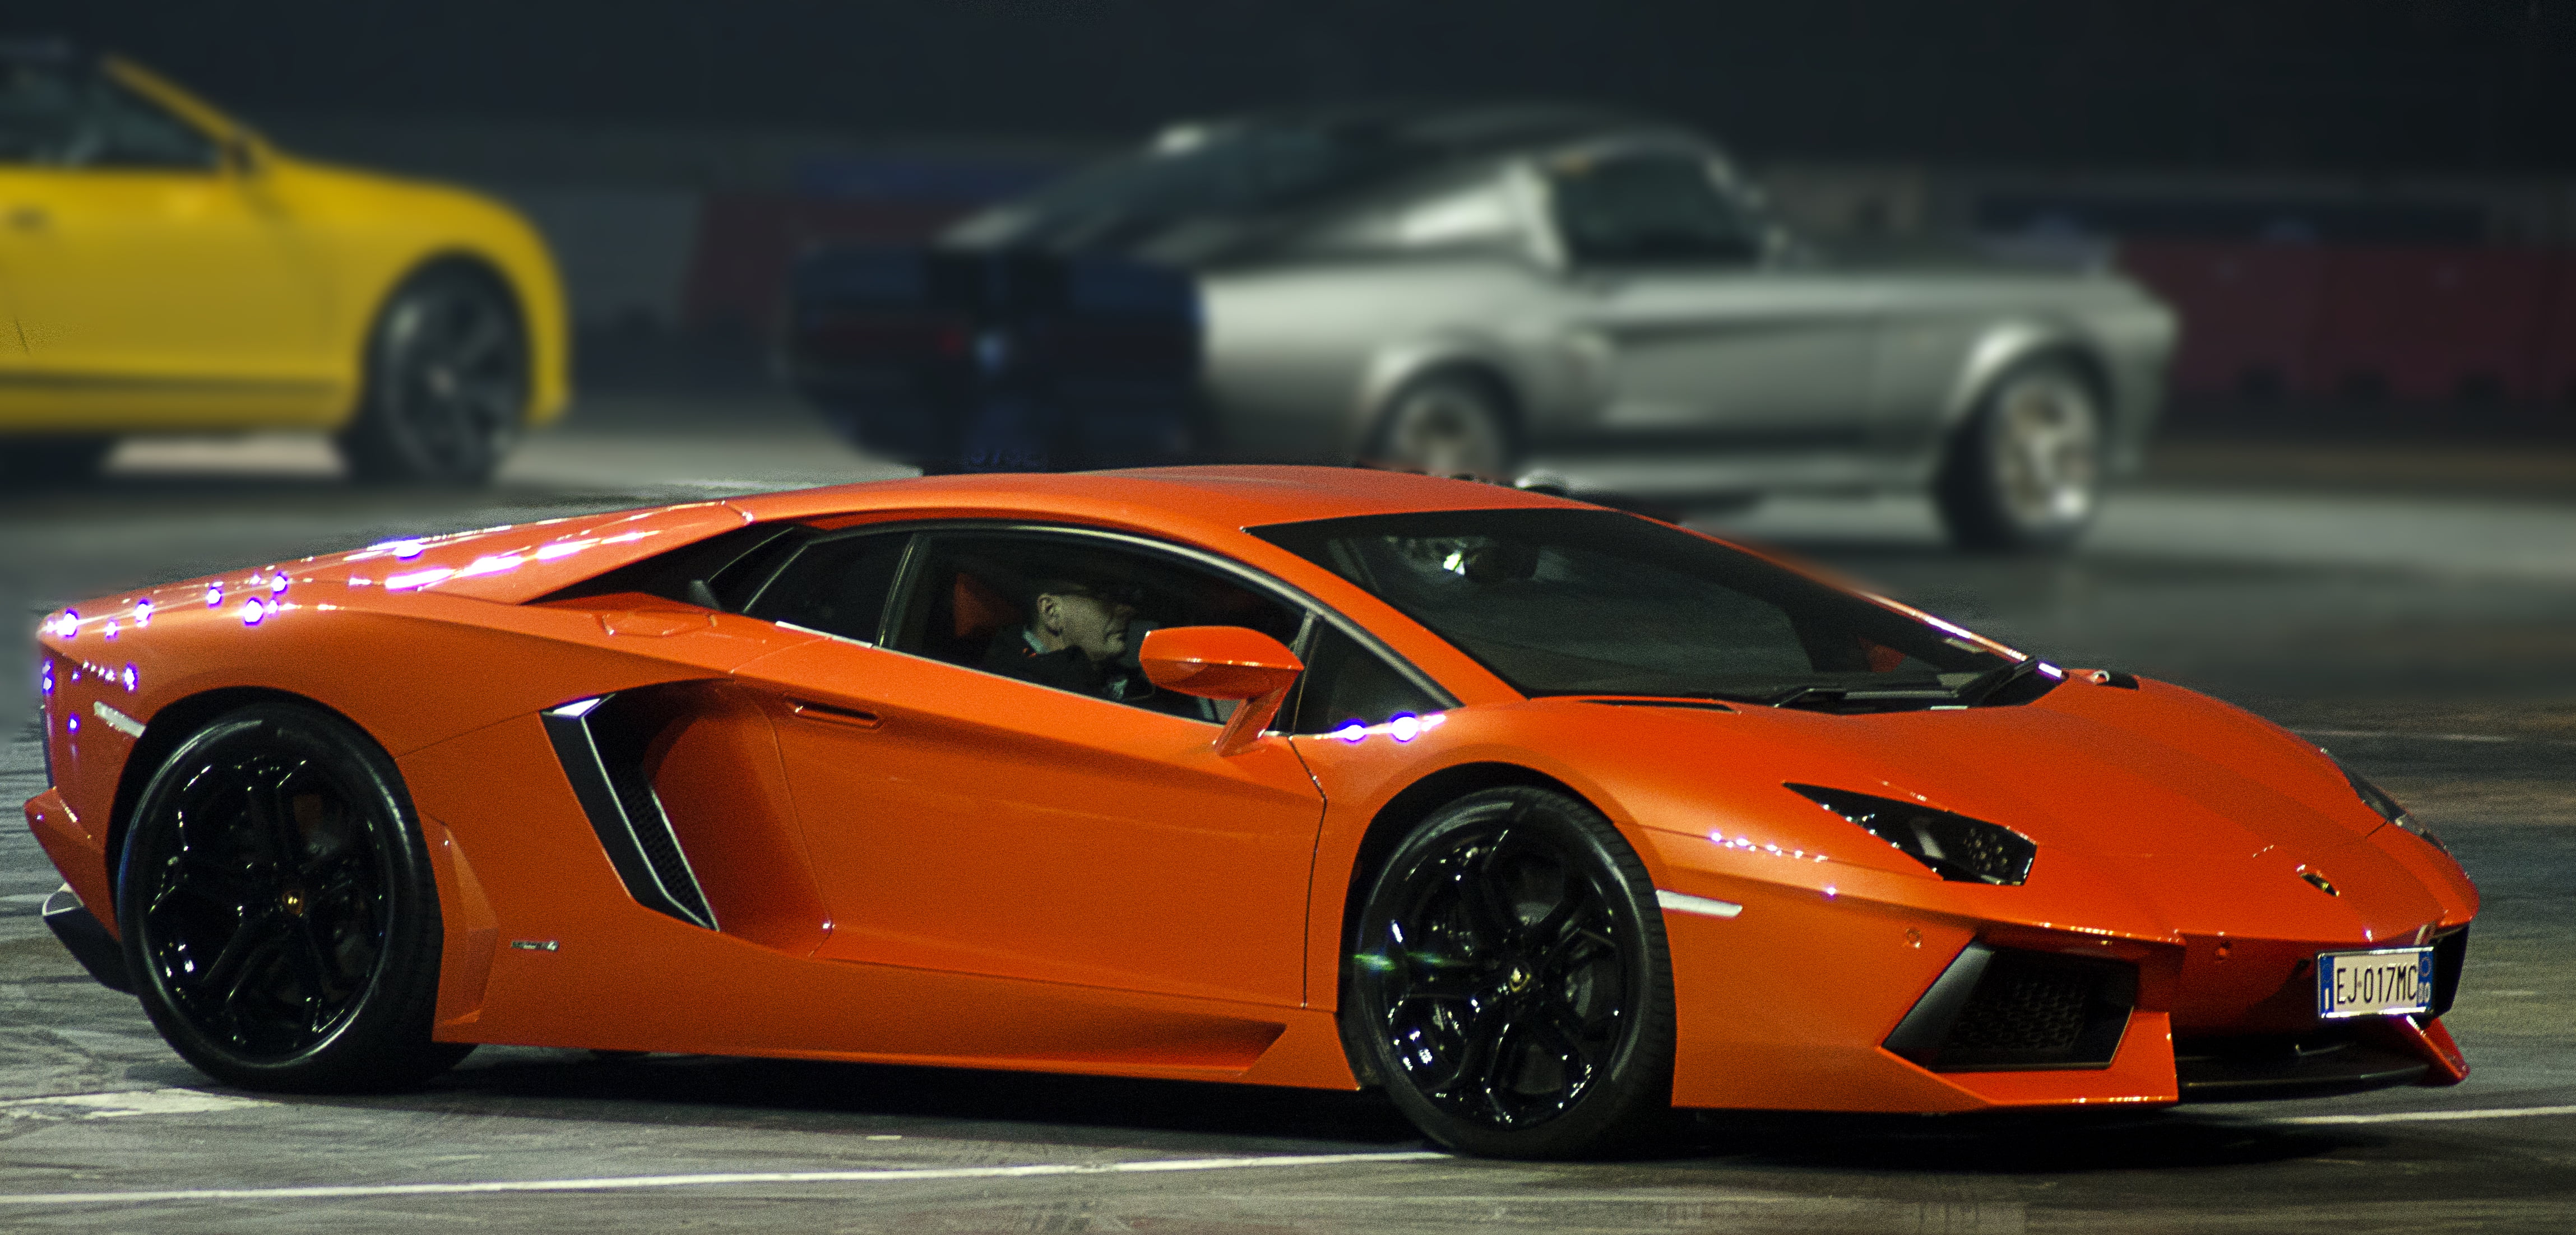 Daftar Lamborghini Orange Wallpaper | Download Kumpulan Wallpaper Cute Hd